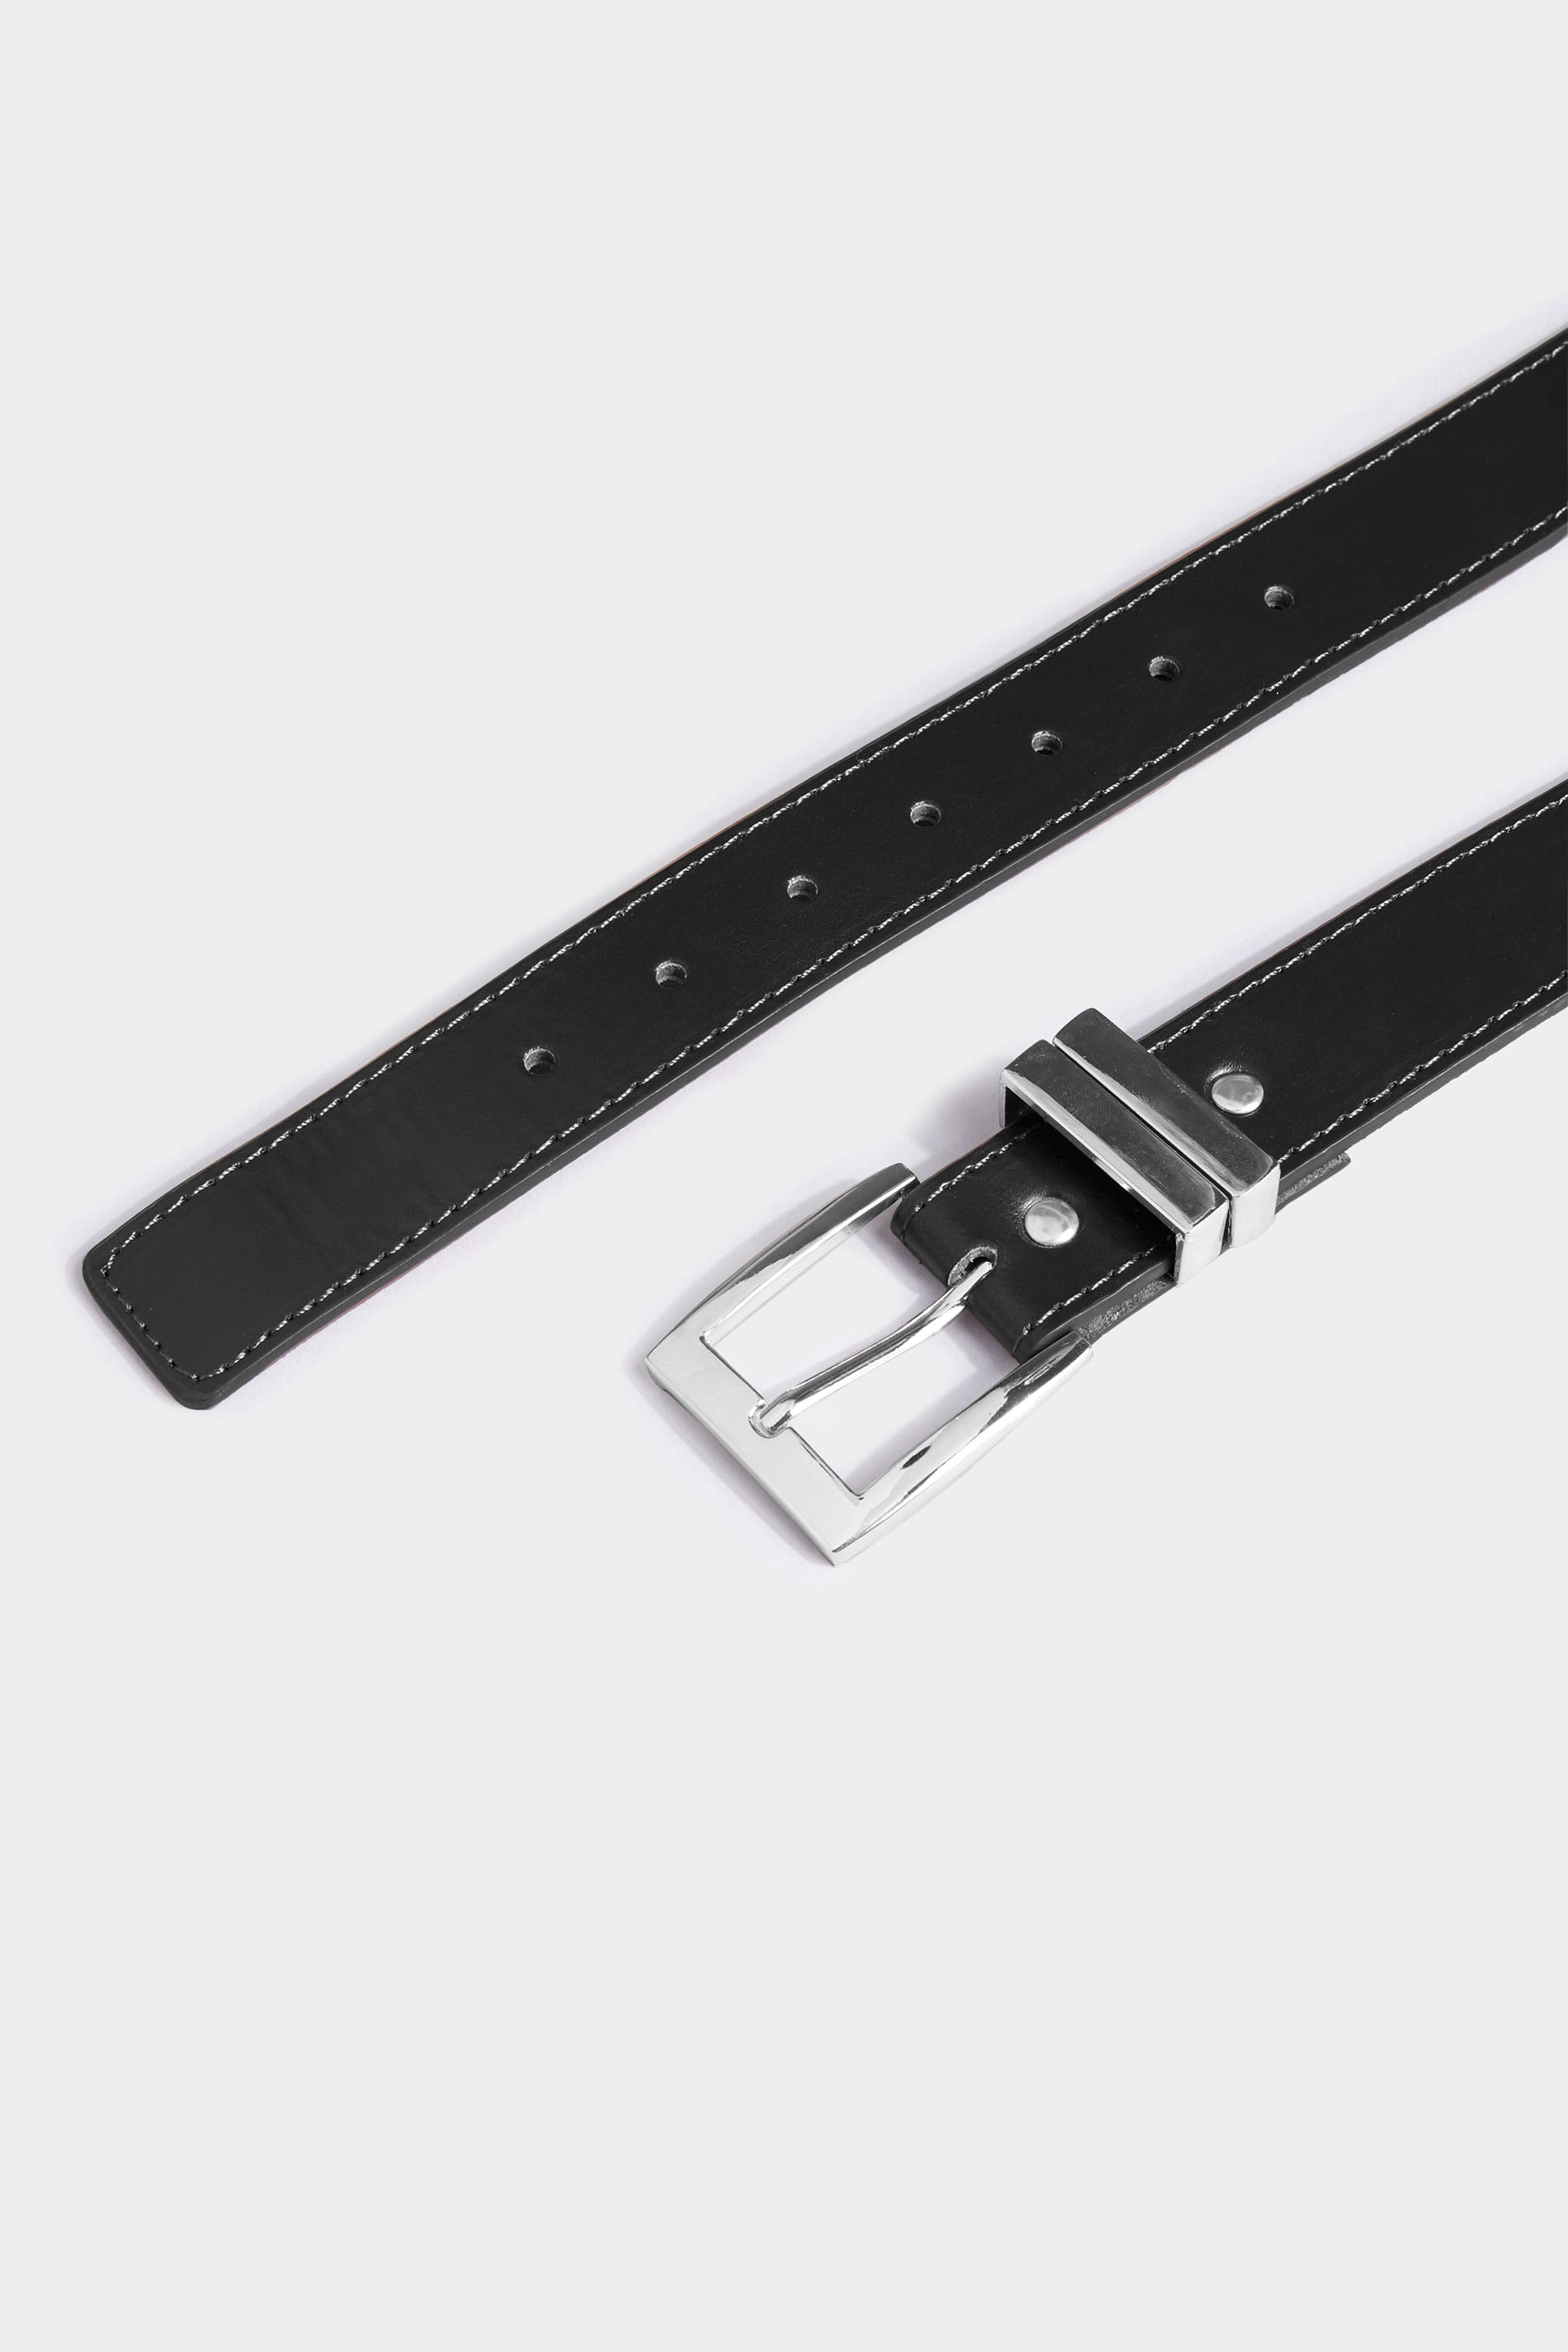 BadRhino Plain Black Bonded Leather Belt | BadRhino